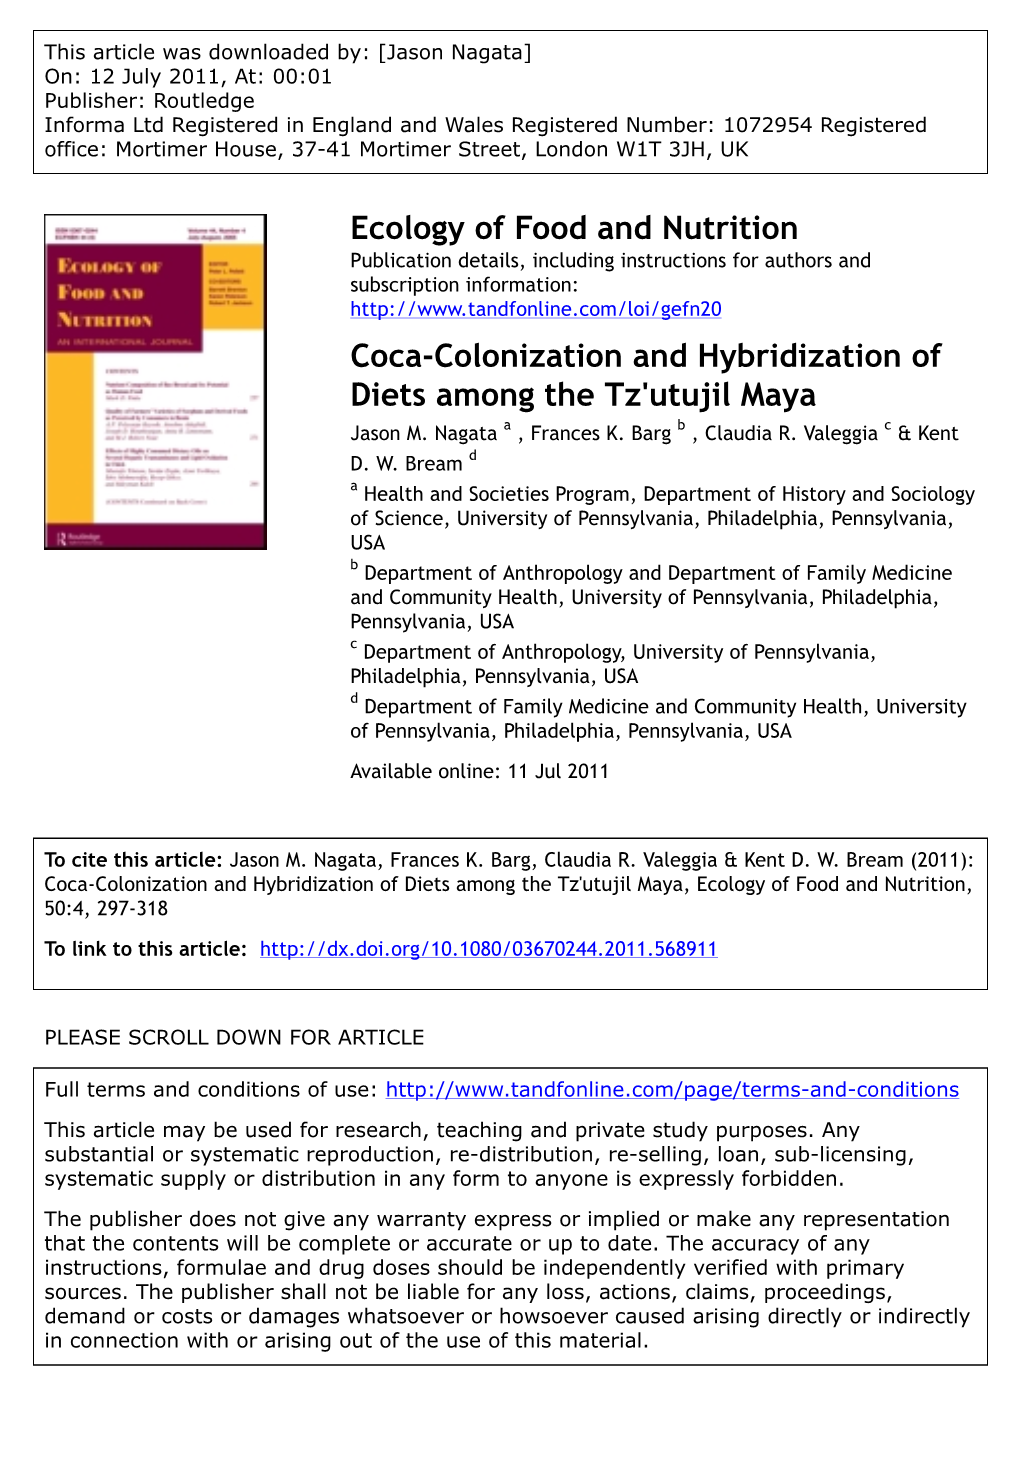 Coca-Colonization and Hybridization of Diets Among the Tz'utujil Maya Jason M